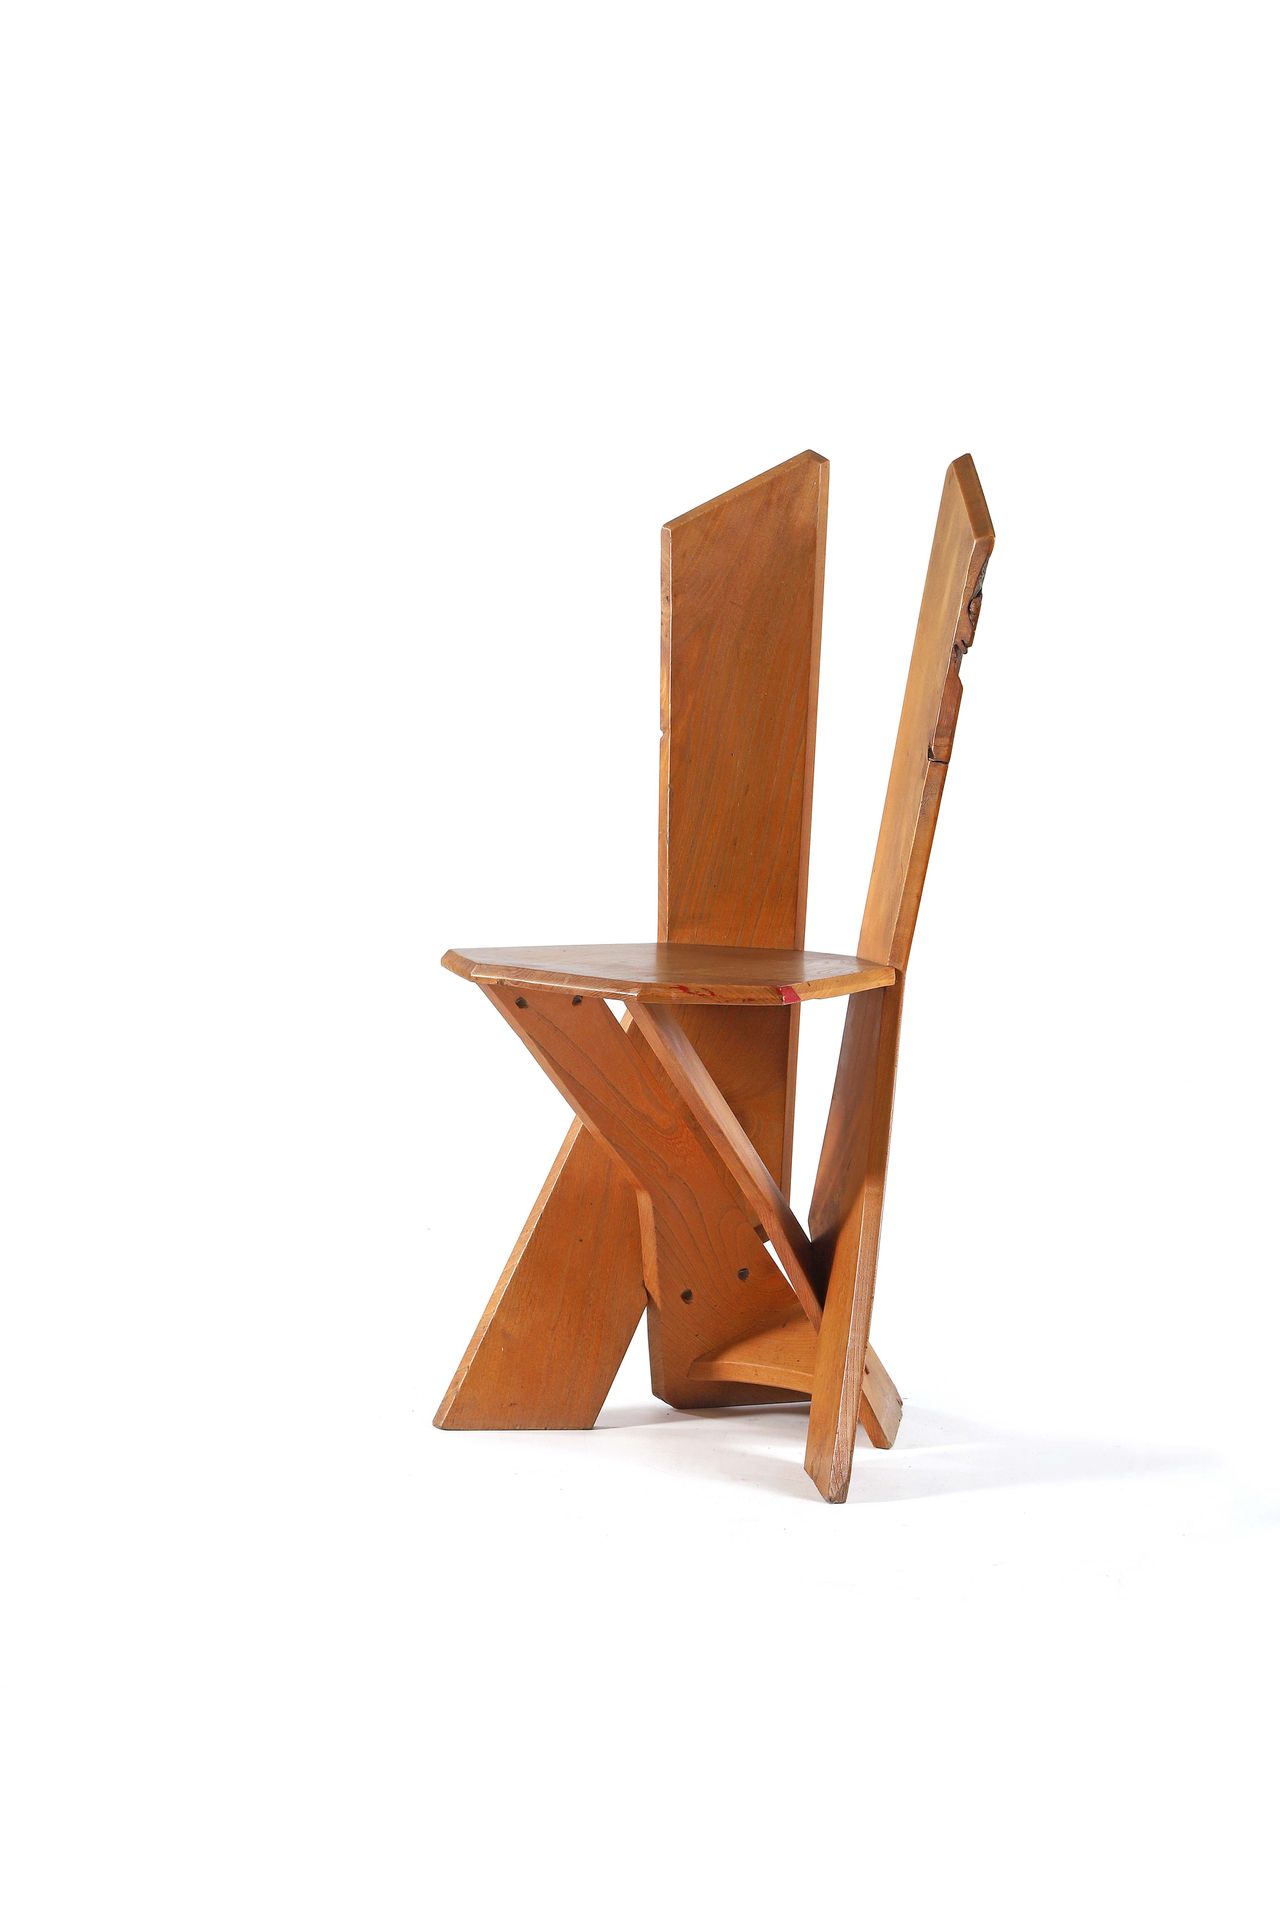 Null 埃尔韦-巴莱

(1933-2010)

罕见的椅子

木头

85 x 37 x 47厘米。

A.A.A.A, 约1965年

罕见的椅子

木头&hellip;